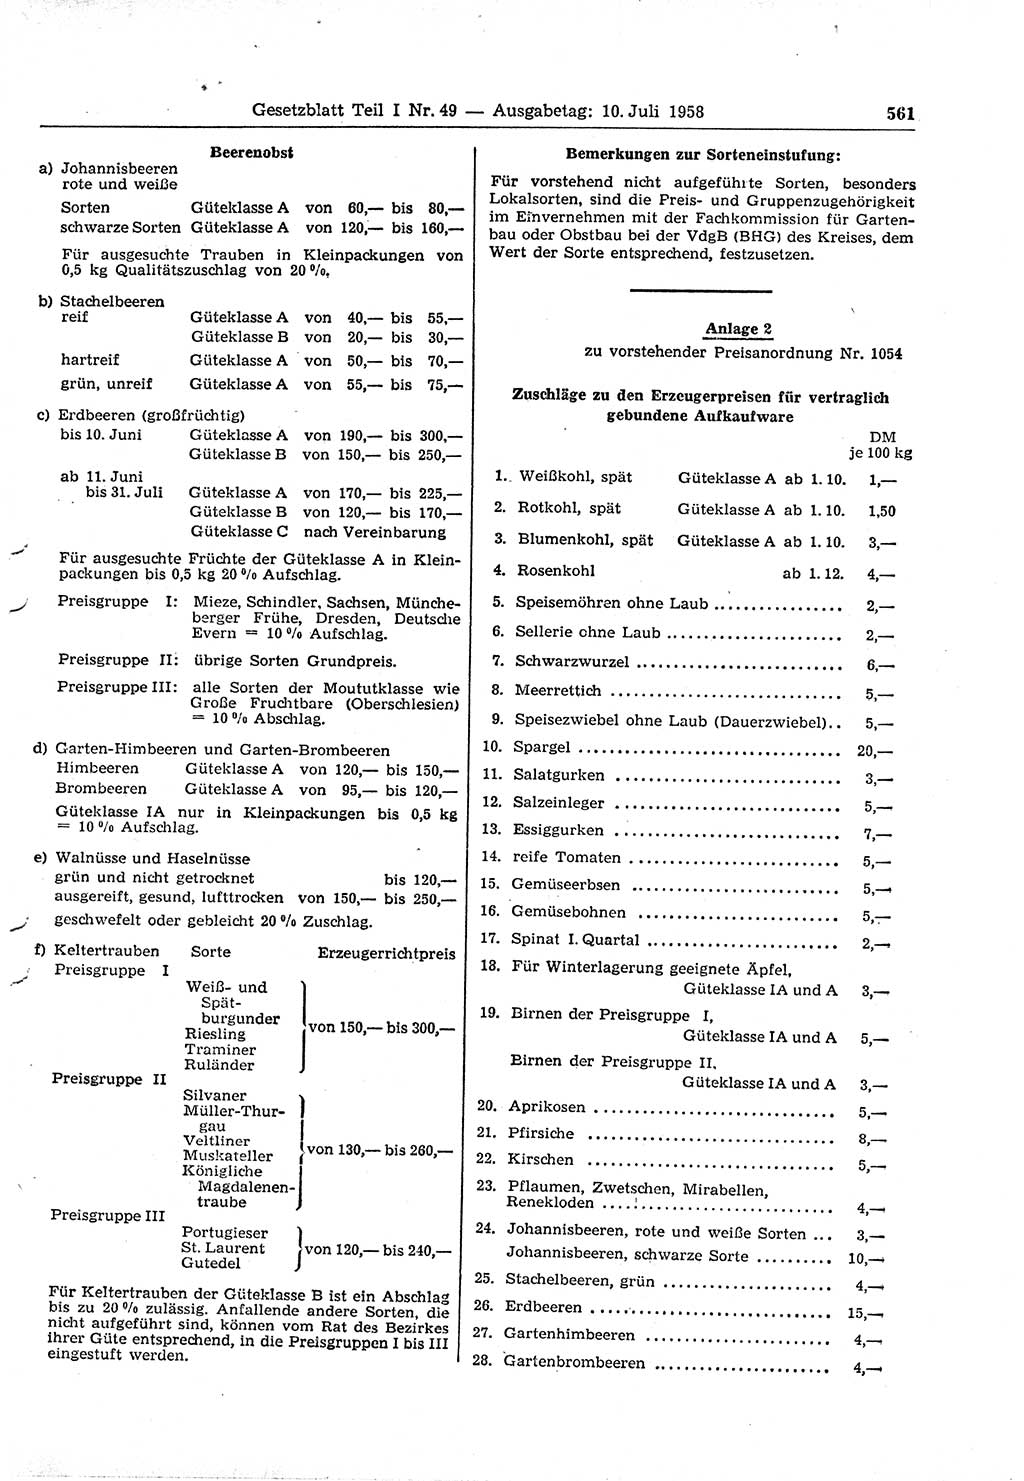 Gesetzblatt (GBl.) der Deutschen Demokratischen Republik (DDR) Teil Ⅰ 1958, Seite 561 (GBl. DDR Ⅰ 1958, S. 561)